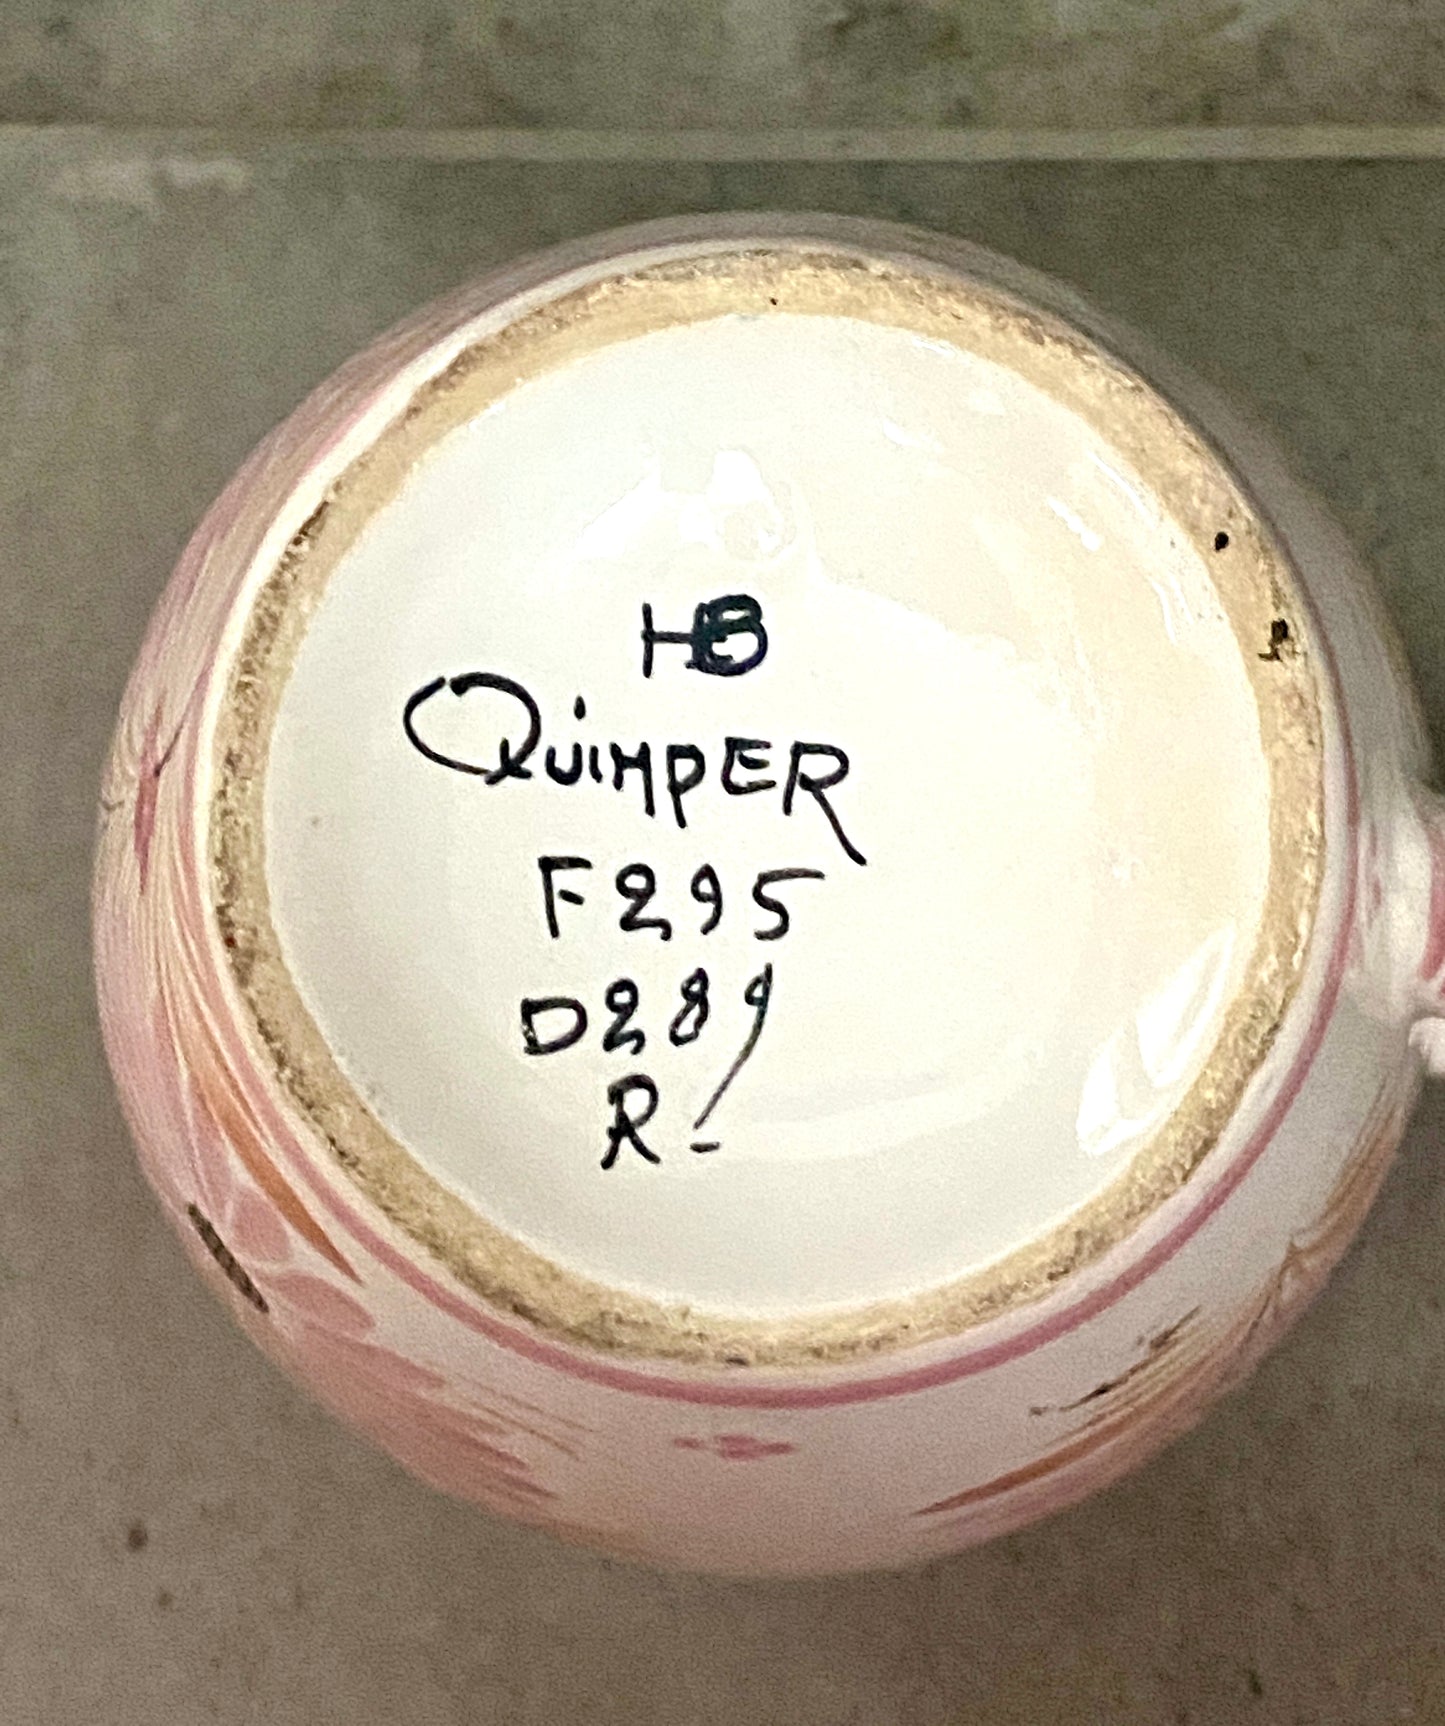 Vase « HENRIOT - QUIMPER », fleuri rose en céramique - Années 70